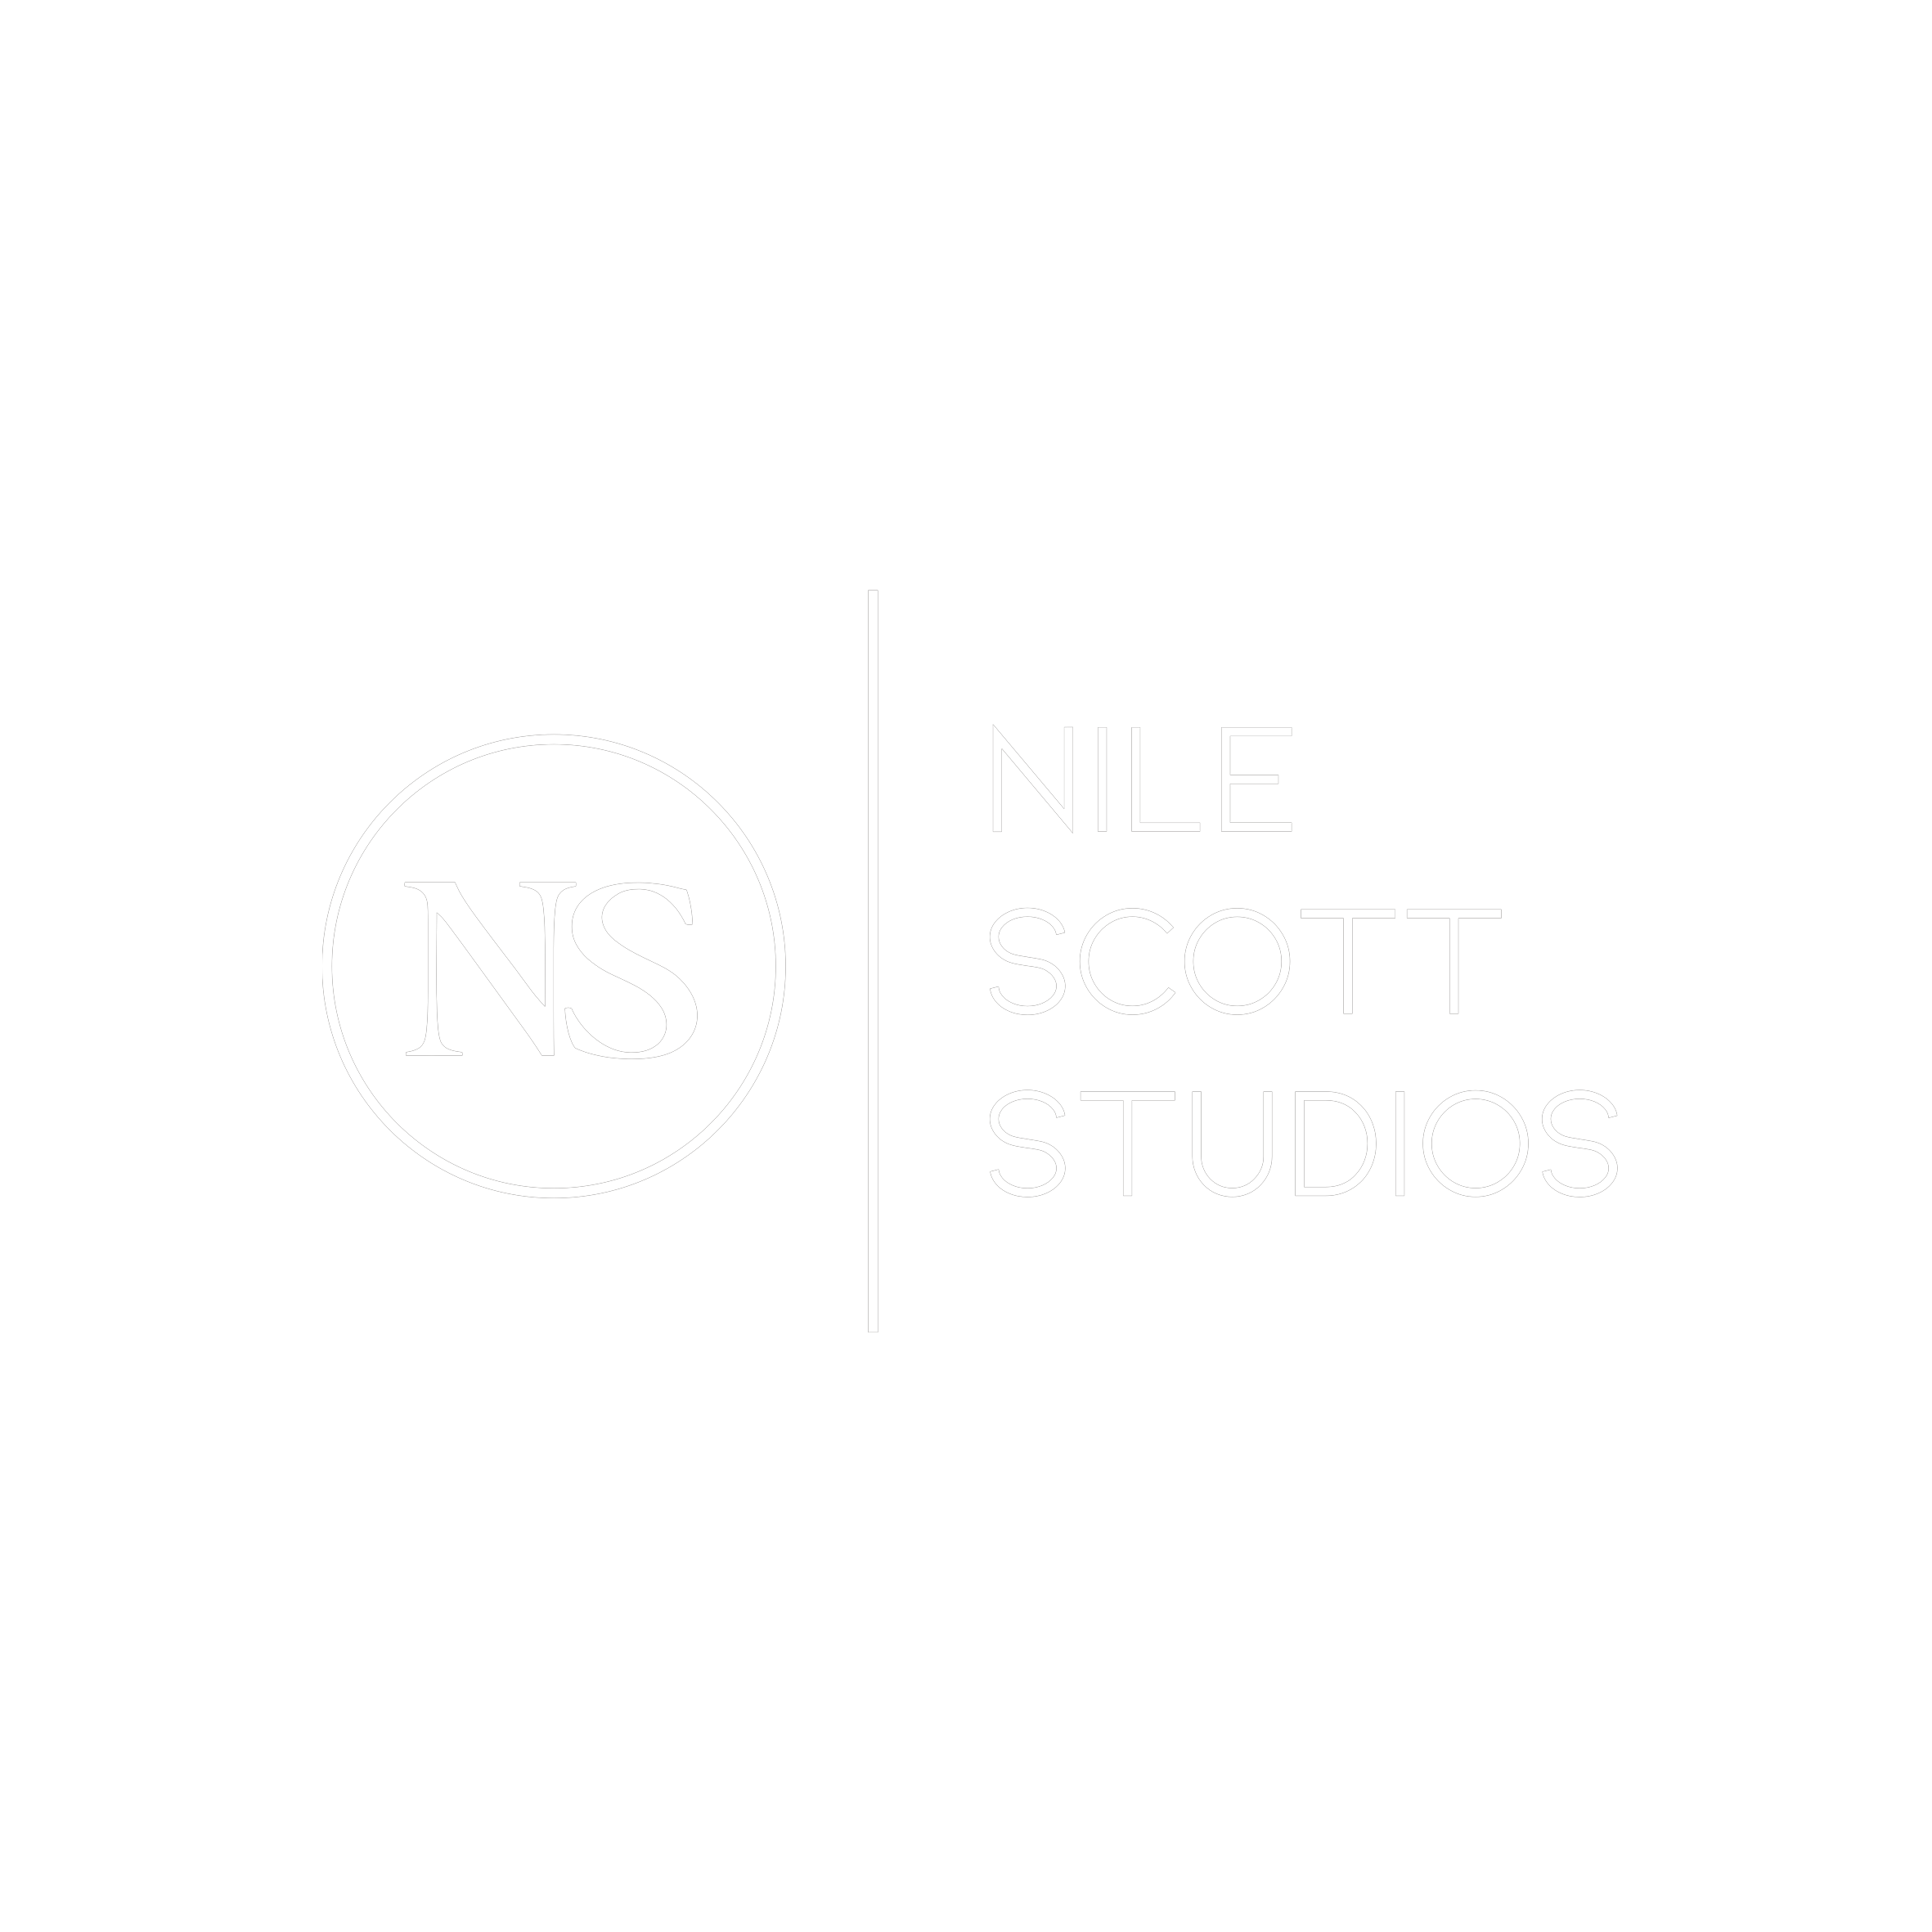 Nile Scott Studios